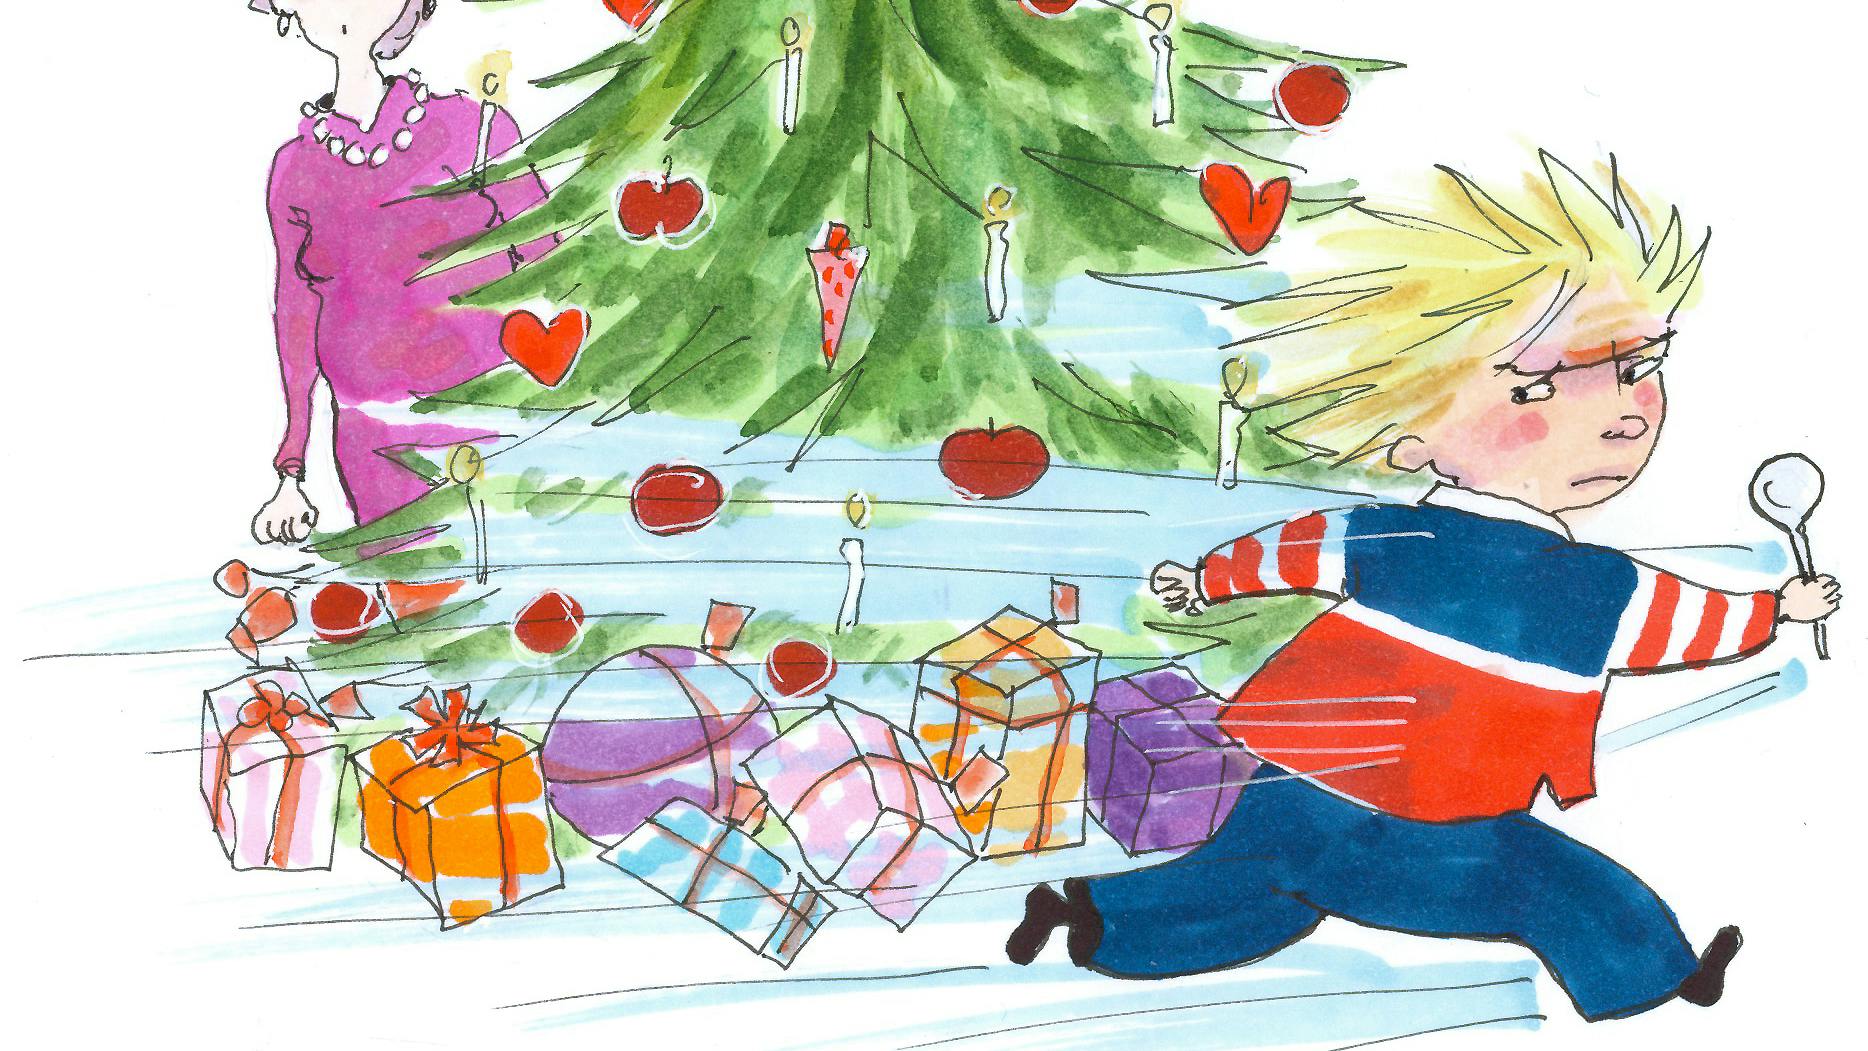 Johns lyse sider: Illustration af julegave-strejke